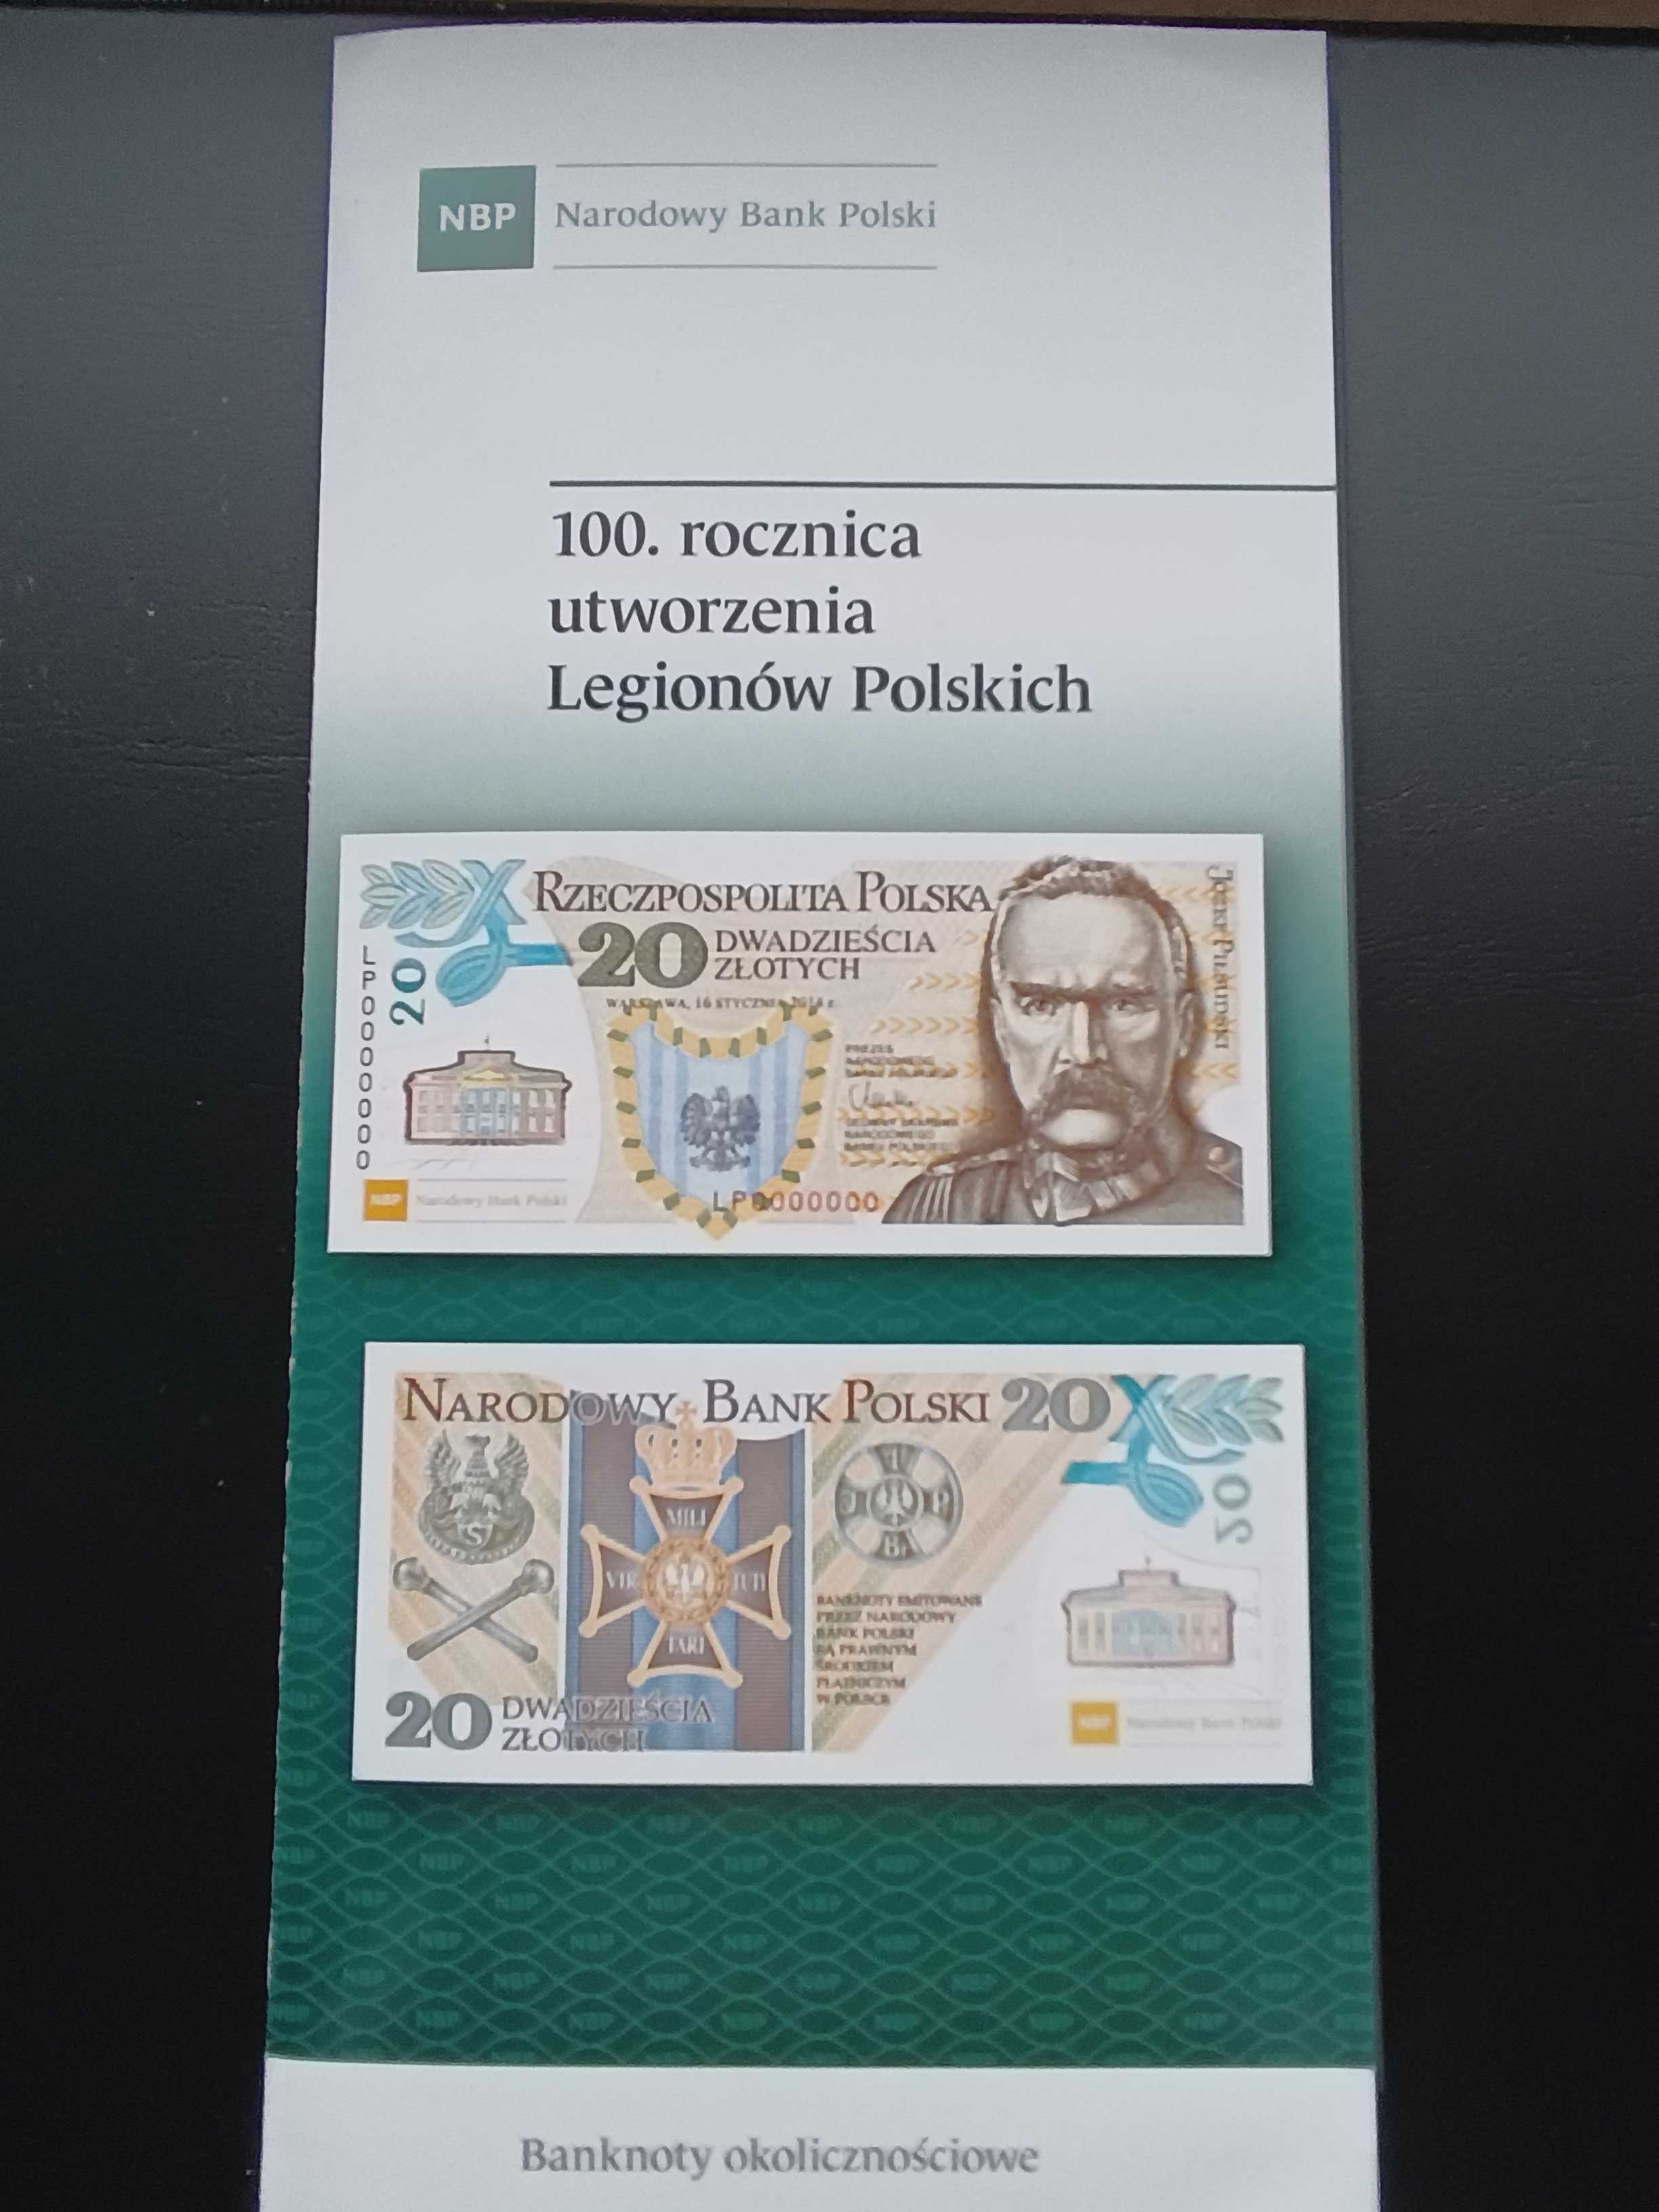 banknot 20 zł - 100. rocznica utworzenia Legionów Polskich